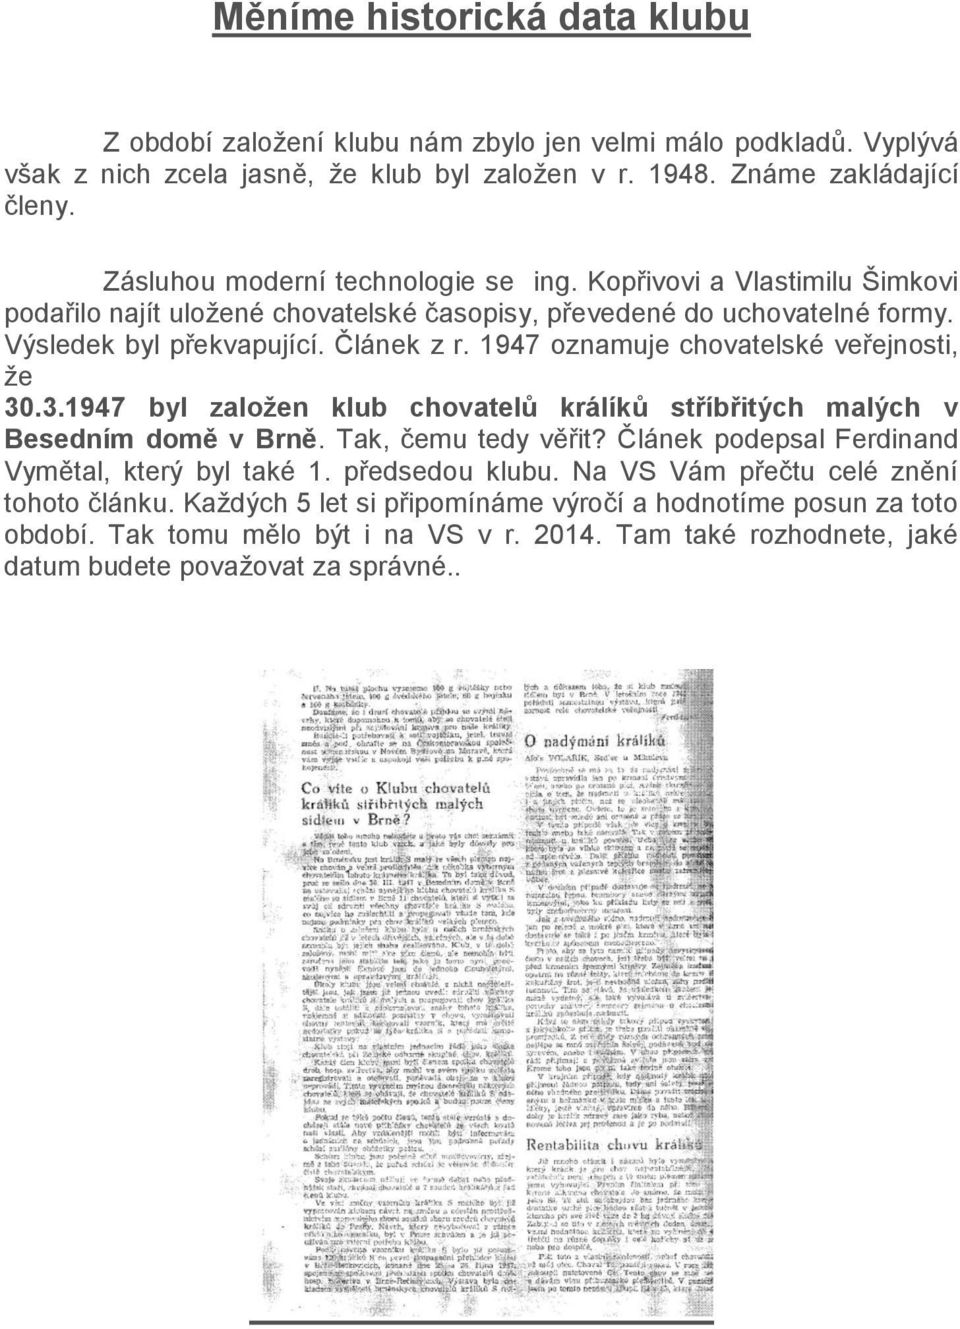 1947 oznamuje chovatelské veřejnosti, že 30.3.1947 byl založen klub chovatelů králíků stříbřitých malých v Besedním domě v Brně. Tak, čemu tedy věřit?